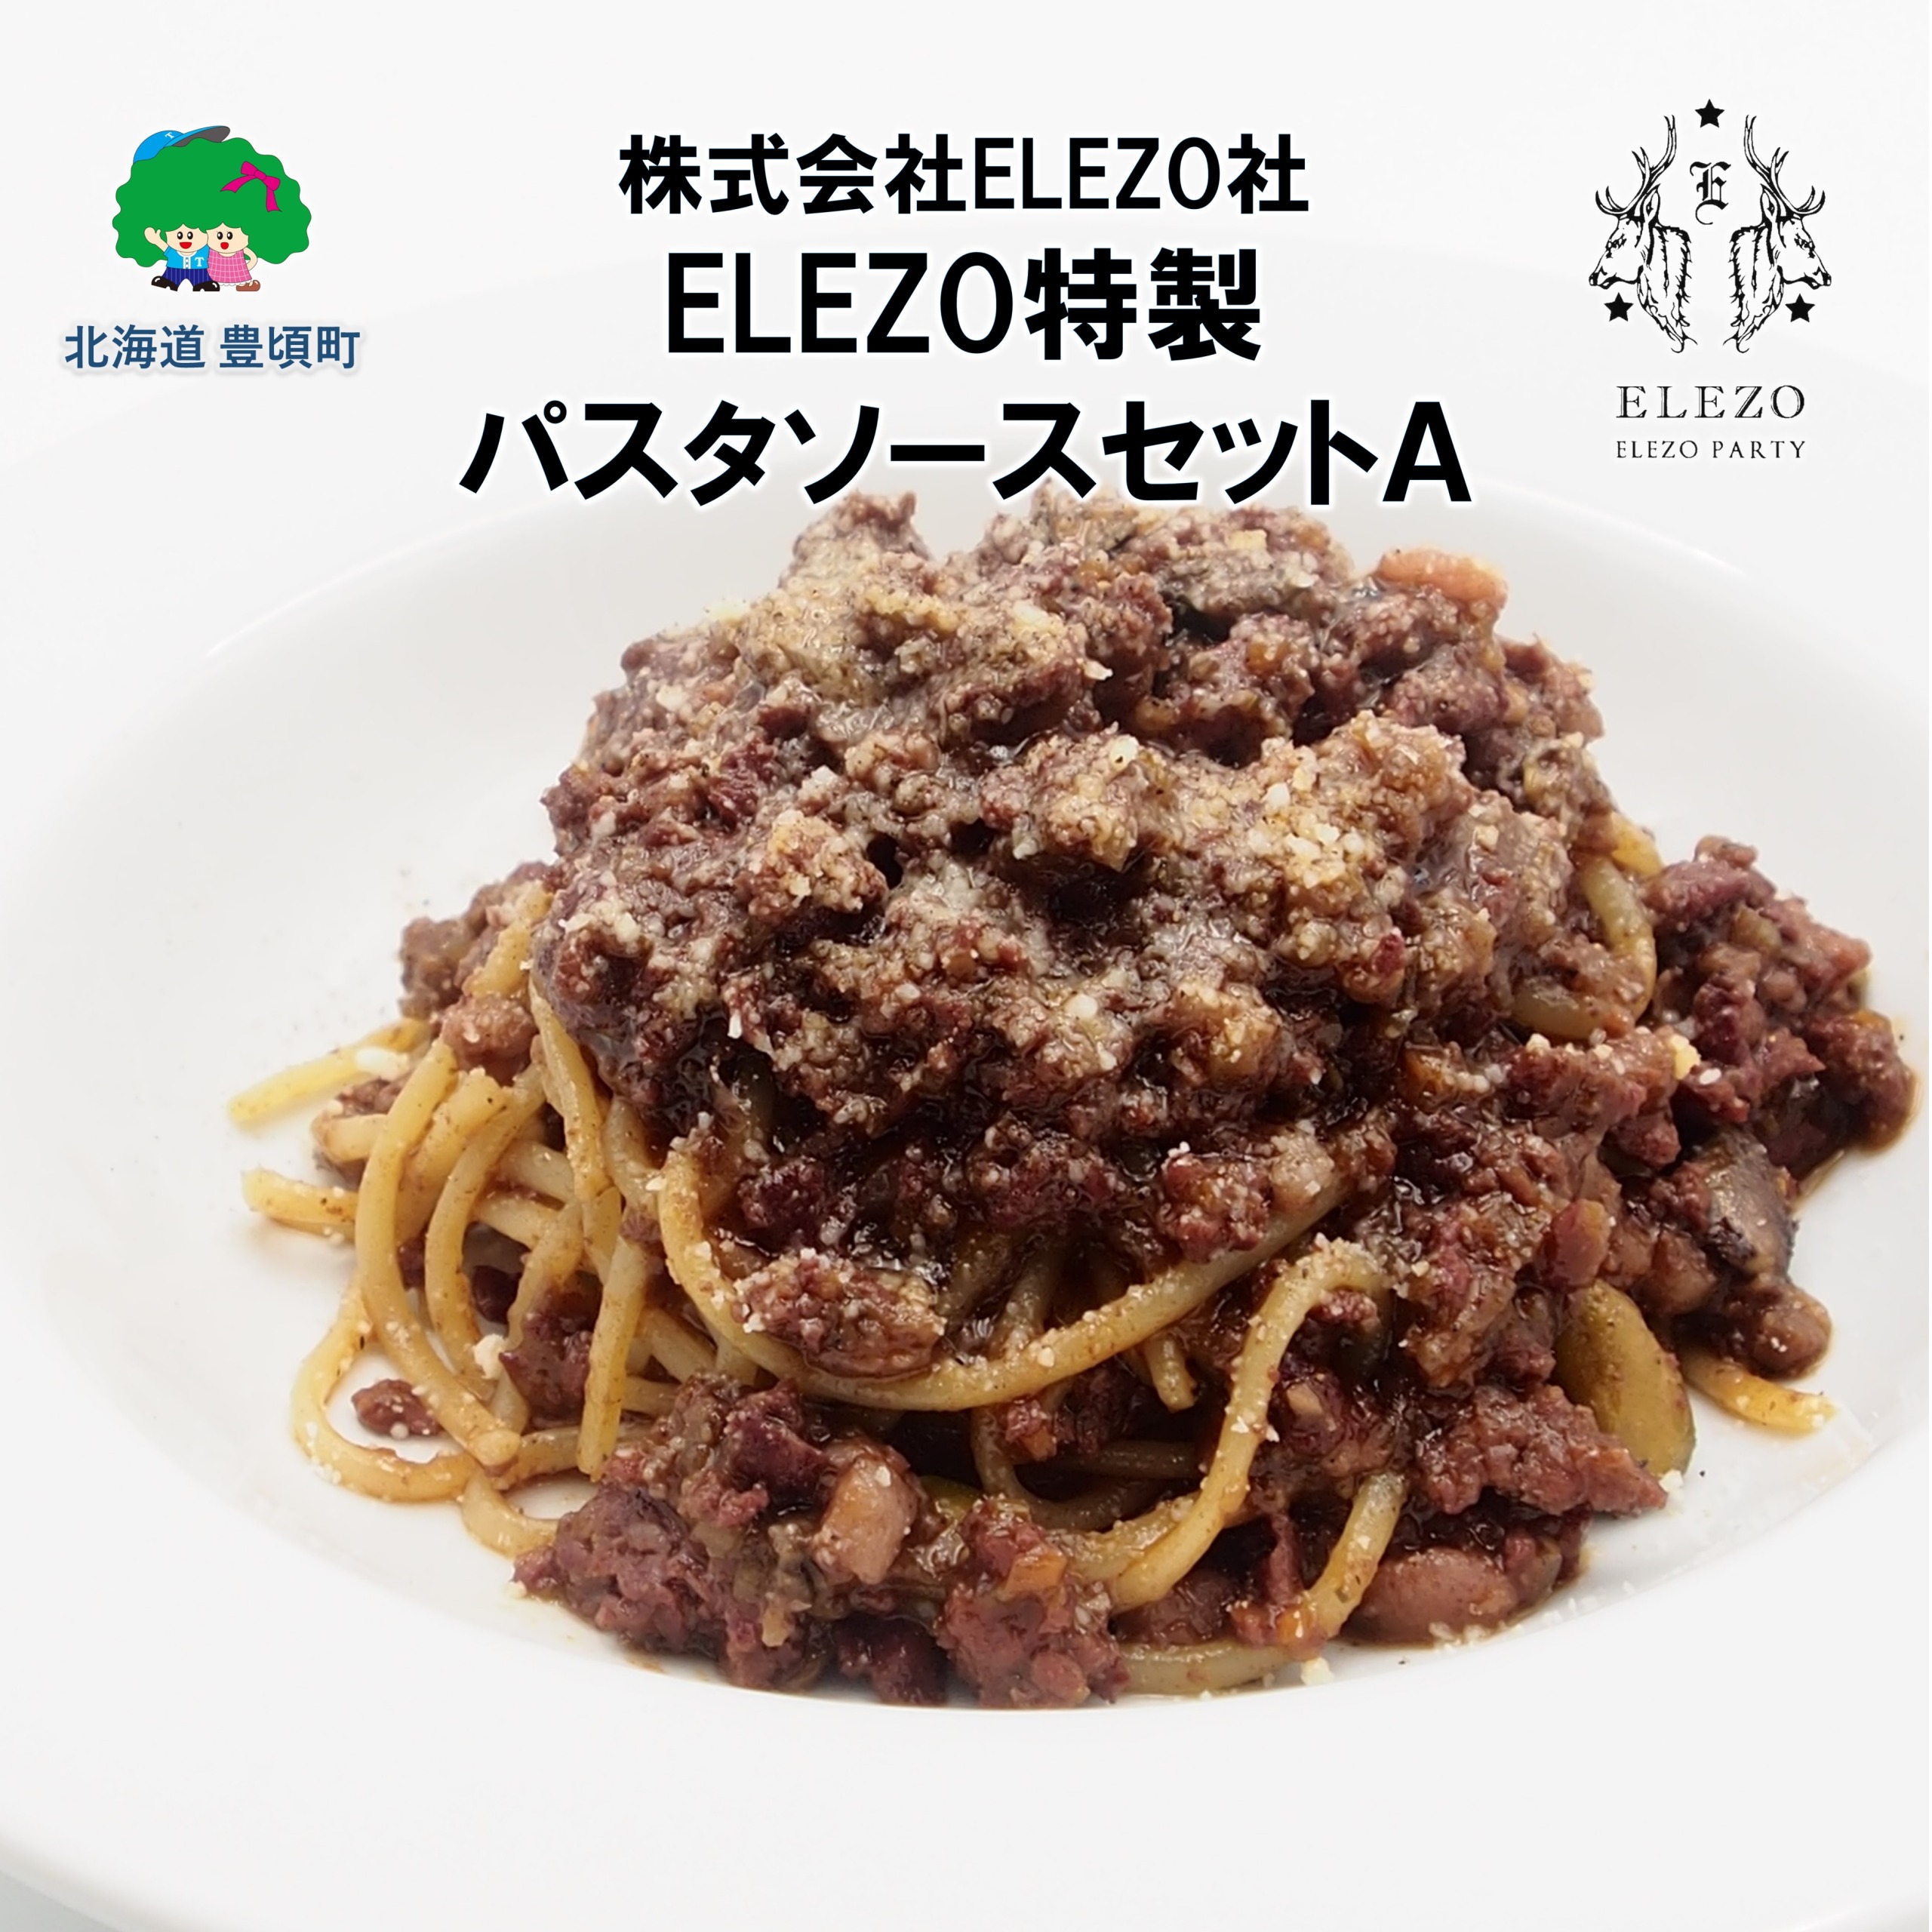 肉屋のパスタソースセットＡ【株式会社ELEZO社】